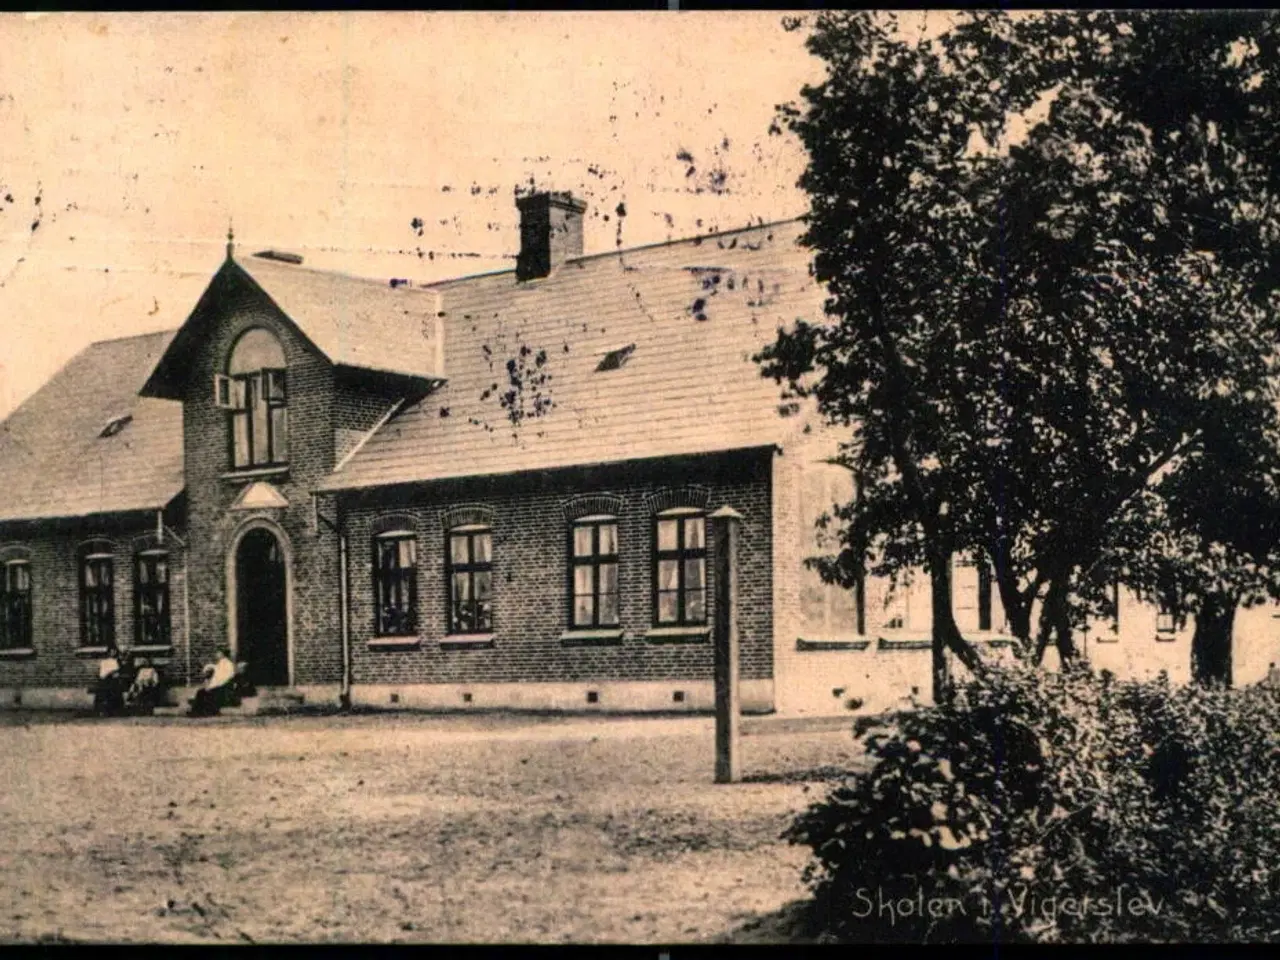 Billede 1 - Skolen i Vigerslev - Vilh. Sørensen 75837 - Brugt